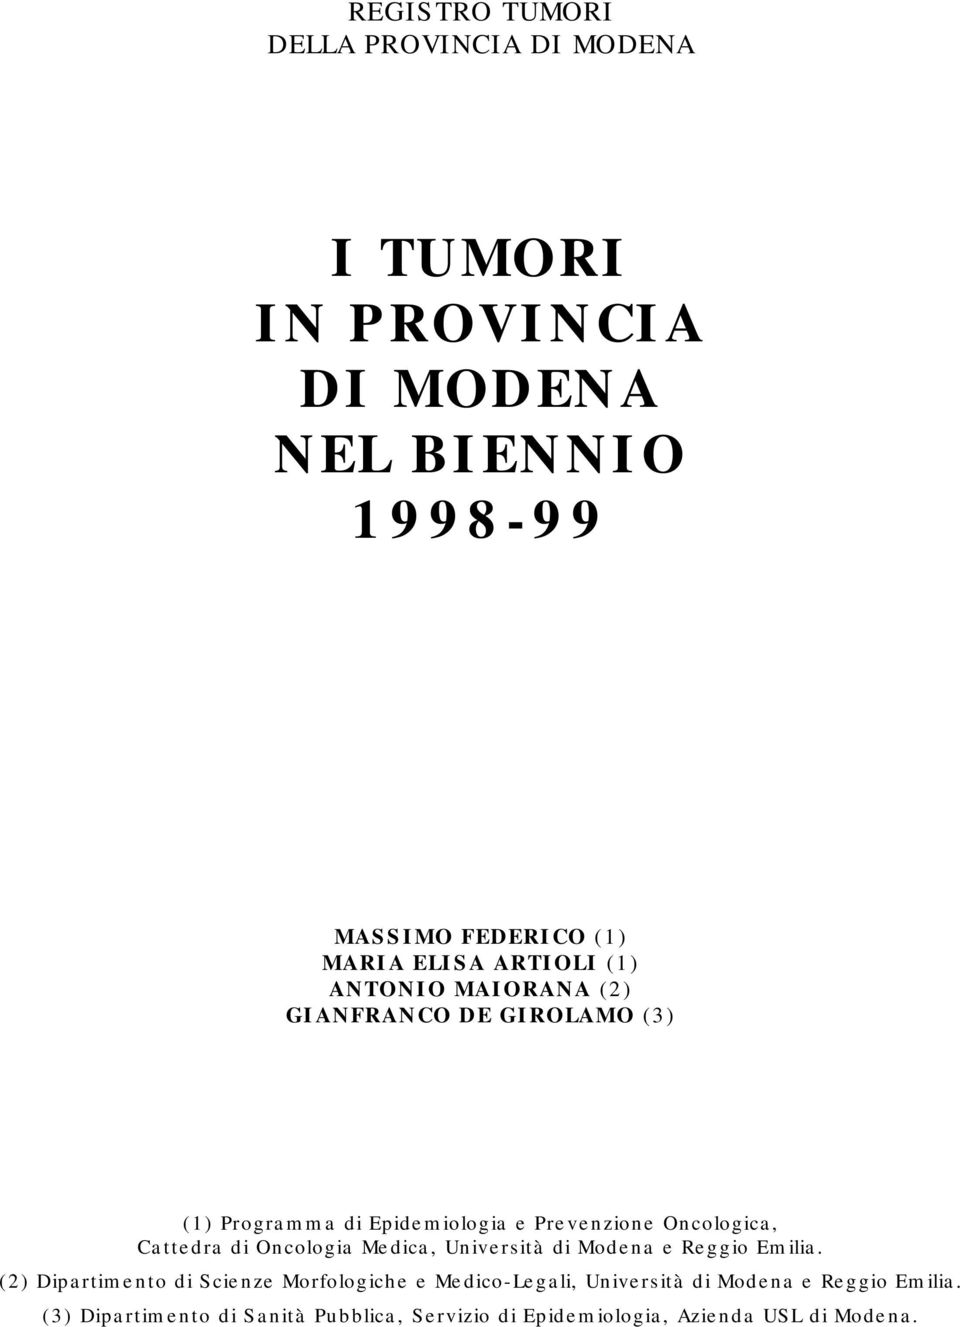 Cattedra di Oncologia Medica, Università di Modena e Reggio Emilia.